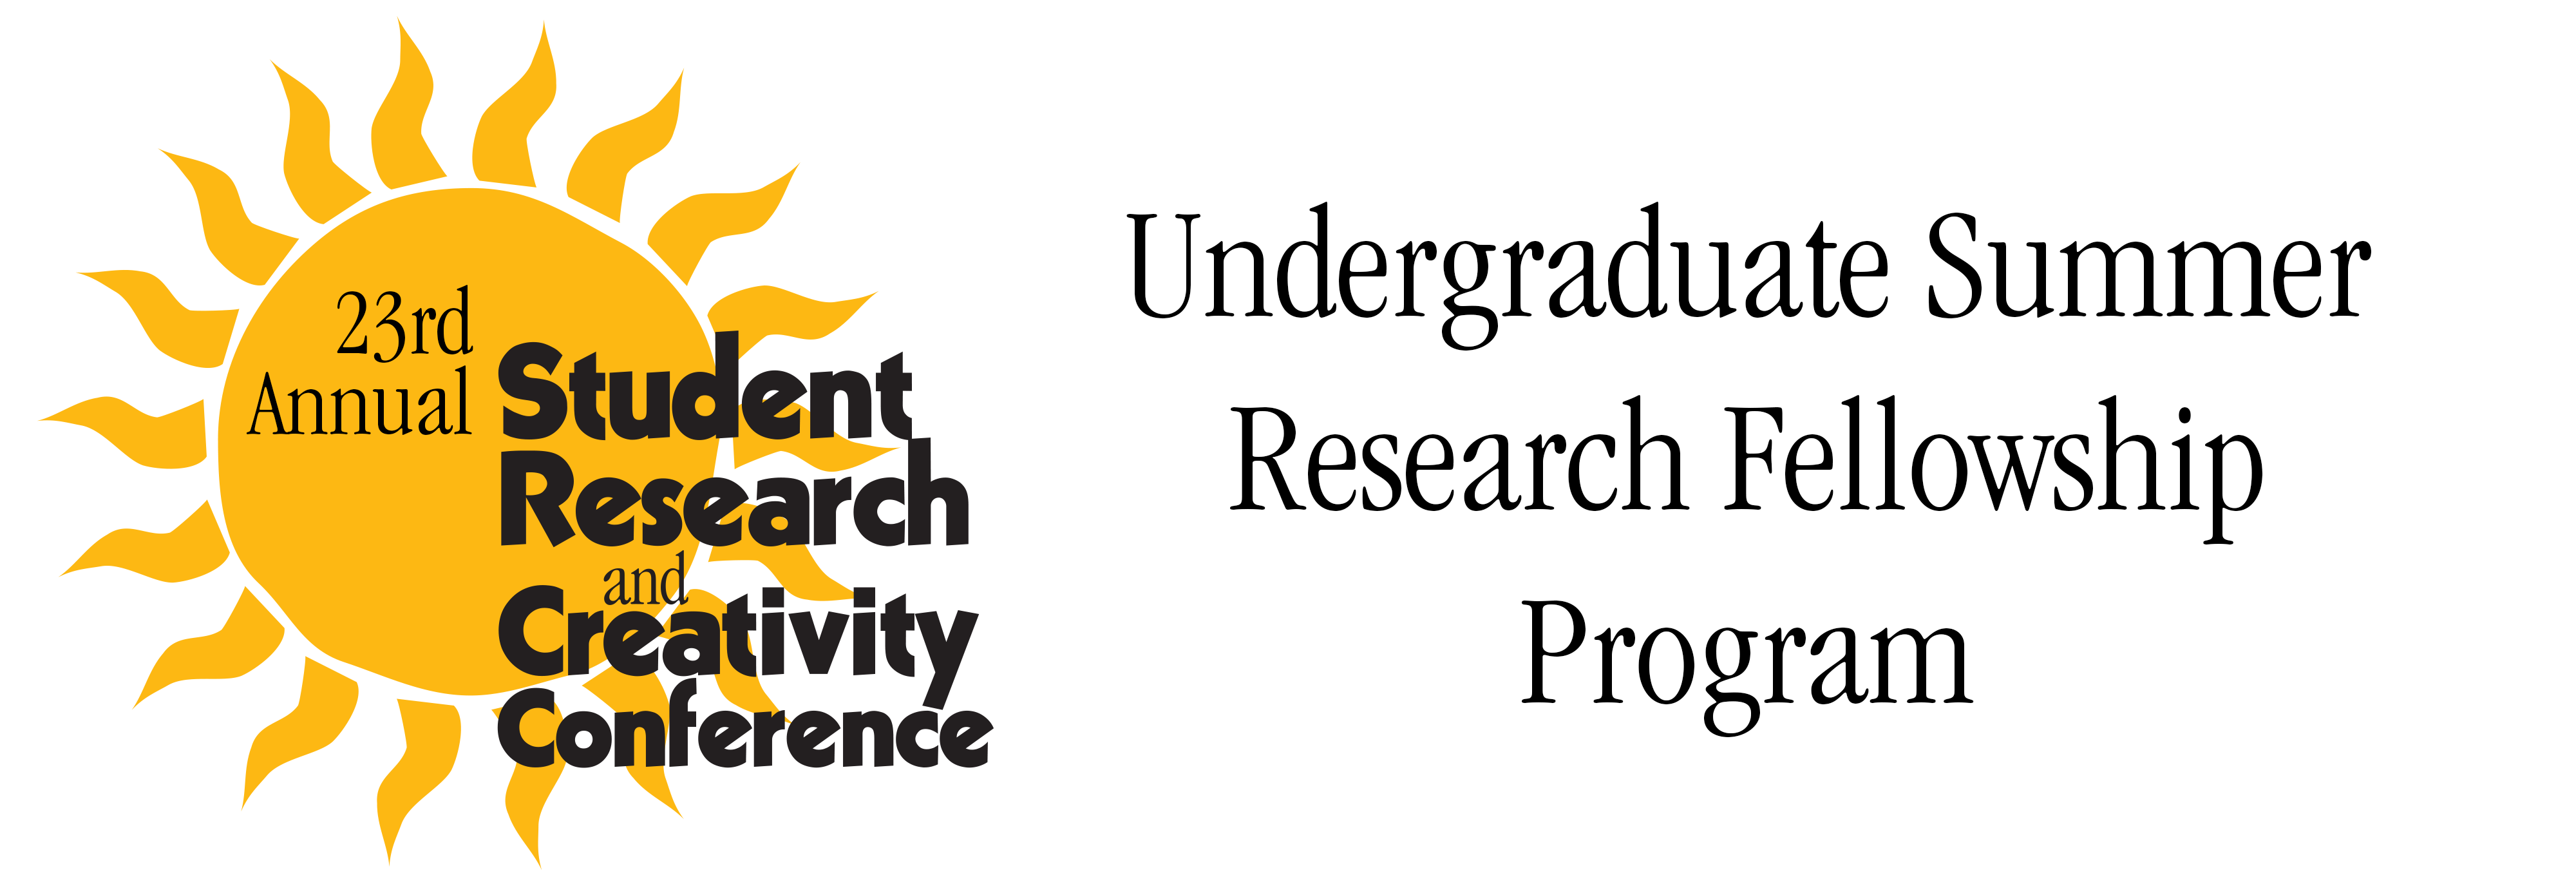 Undergraduate Summer Research Fellowship Program